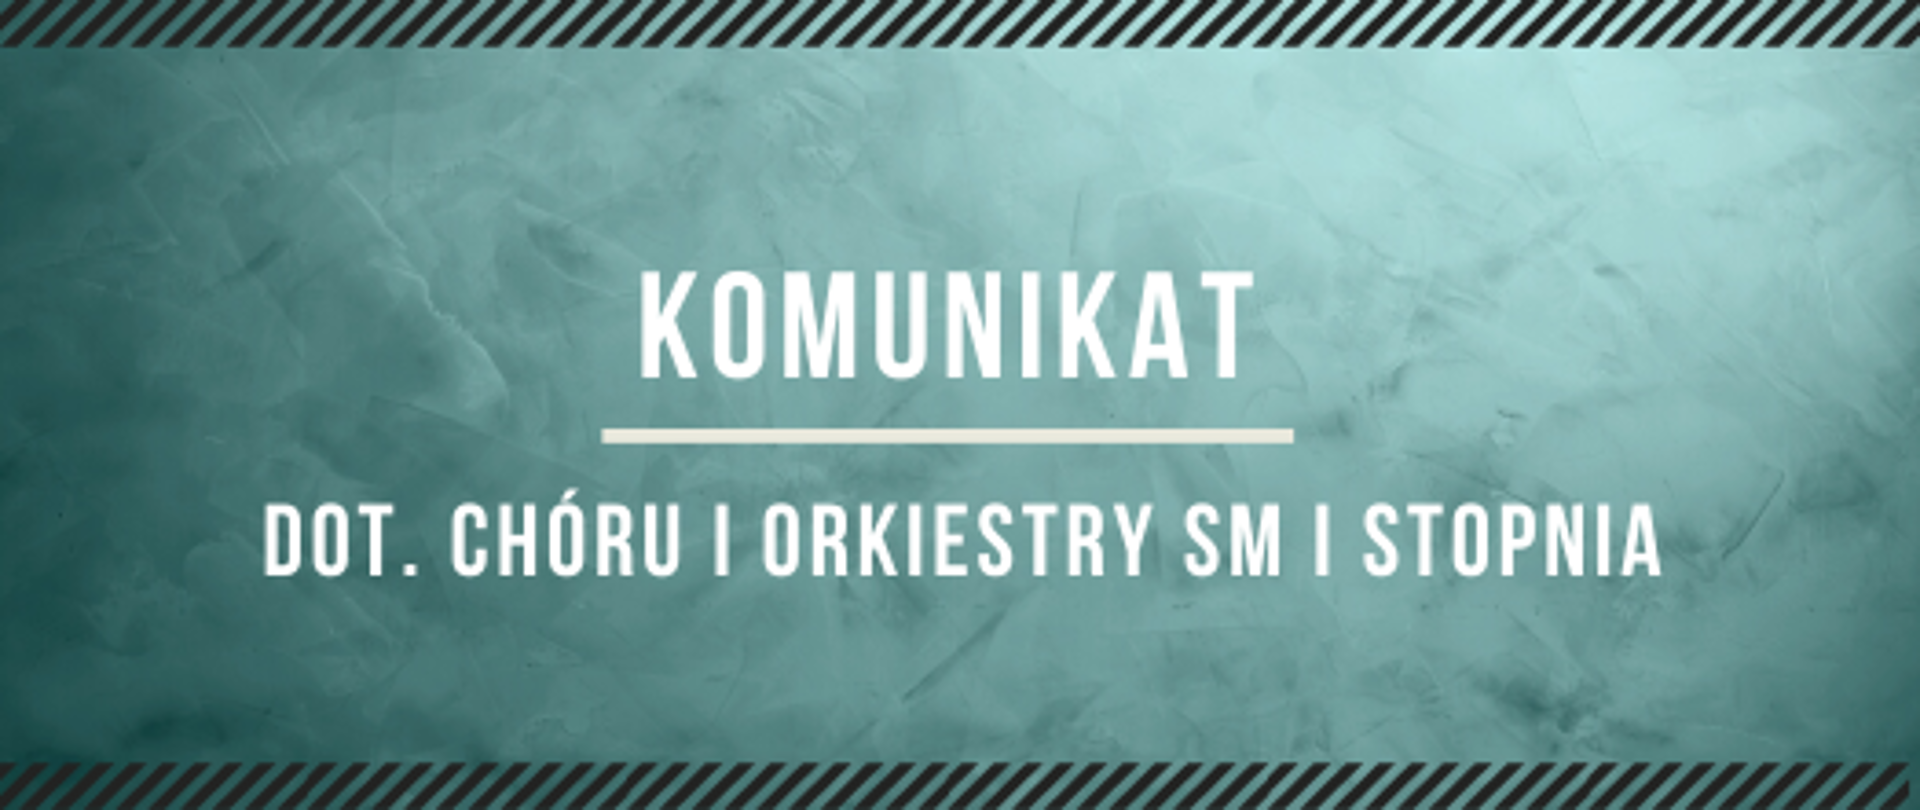 Na turkusowym tle napis: "Komunikat dot. chóru i orkiestry SM I stopnia"